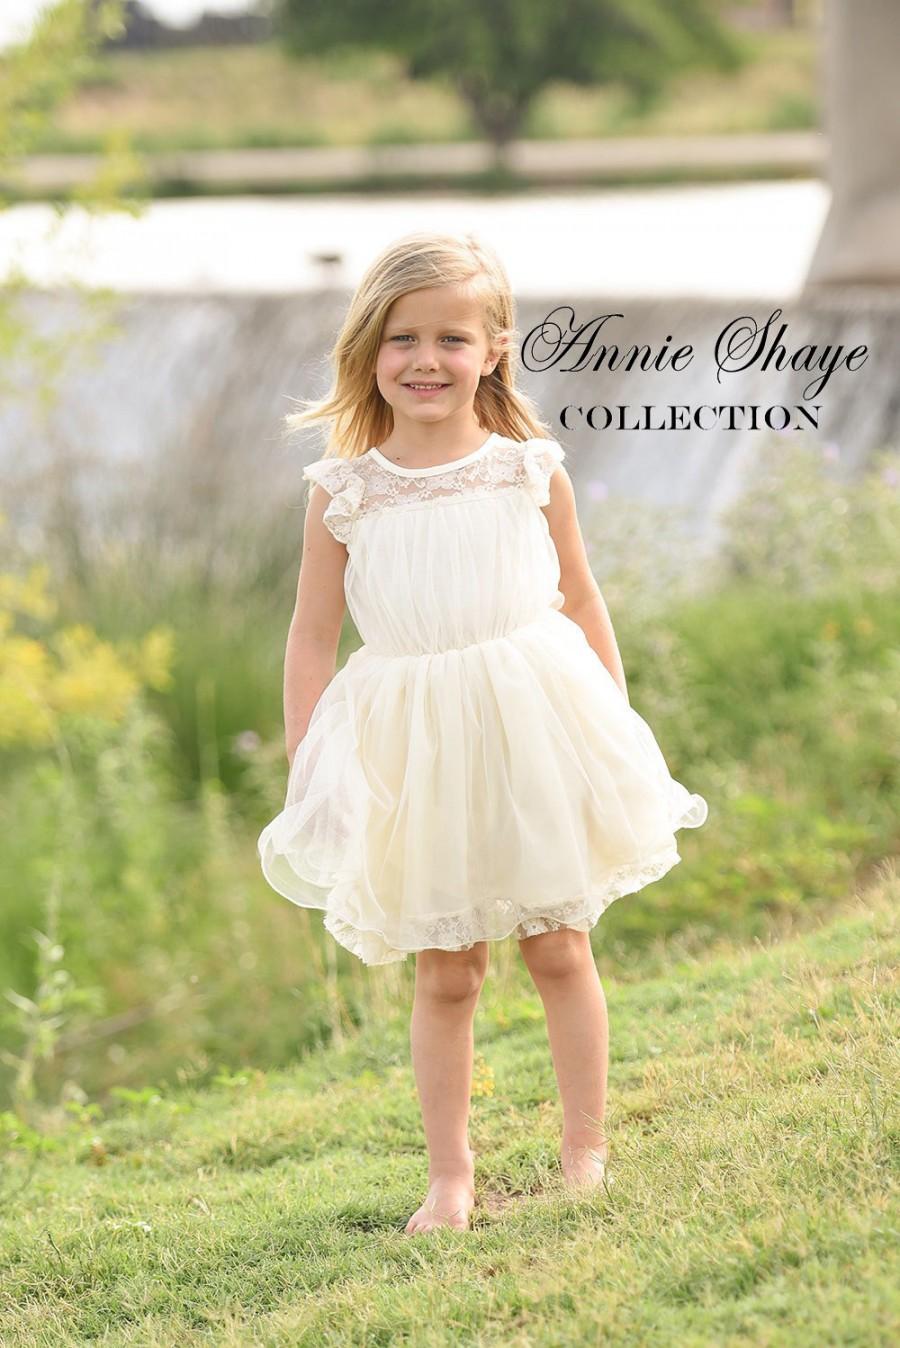 زفاف - Olivia Dress by Annie Shaye - flower girl dress ivory, lace toddler dress made for girls ages 9-12M,1t,2t,3t,4t,5,6,7,8,9,10,11,12,13,14